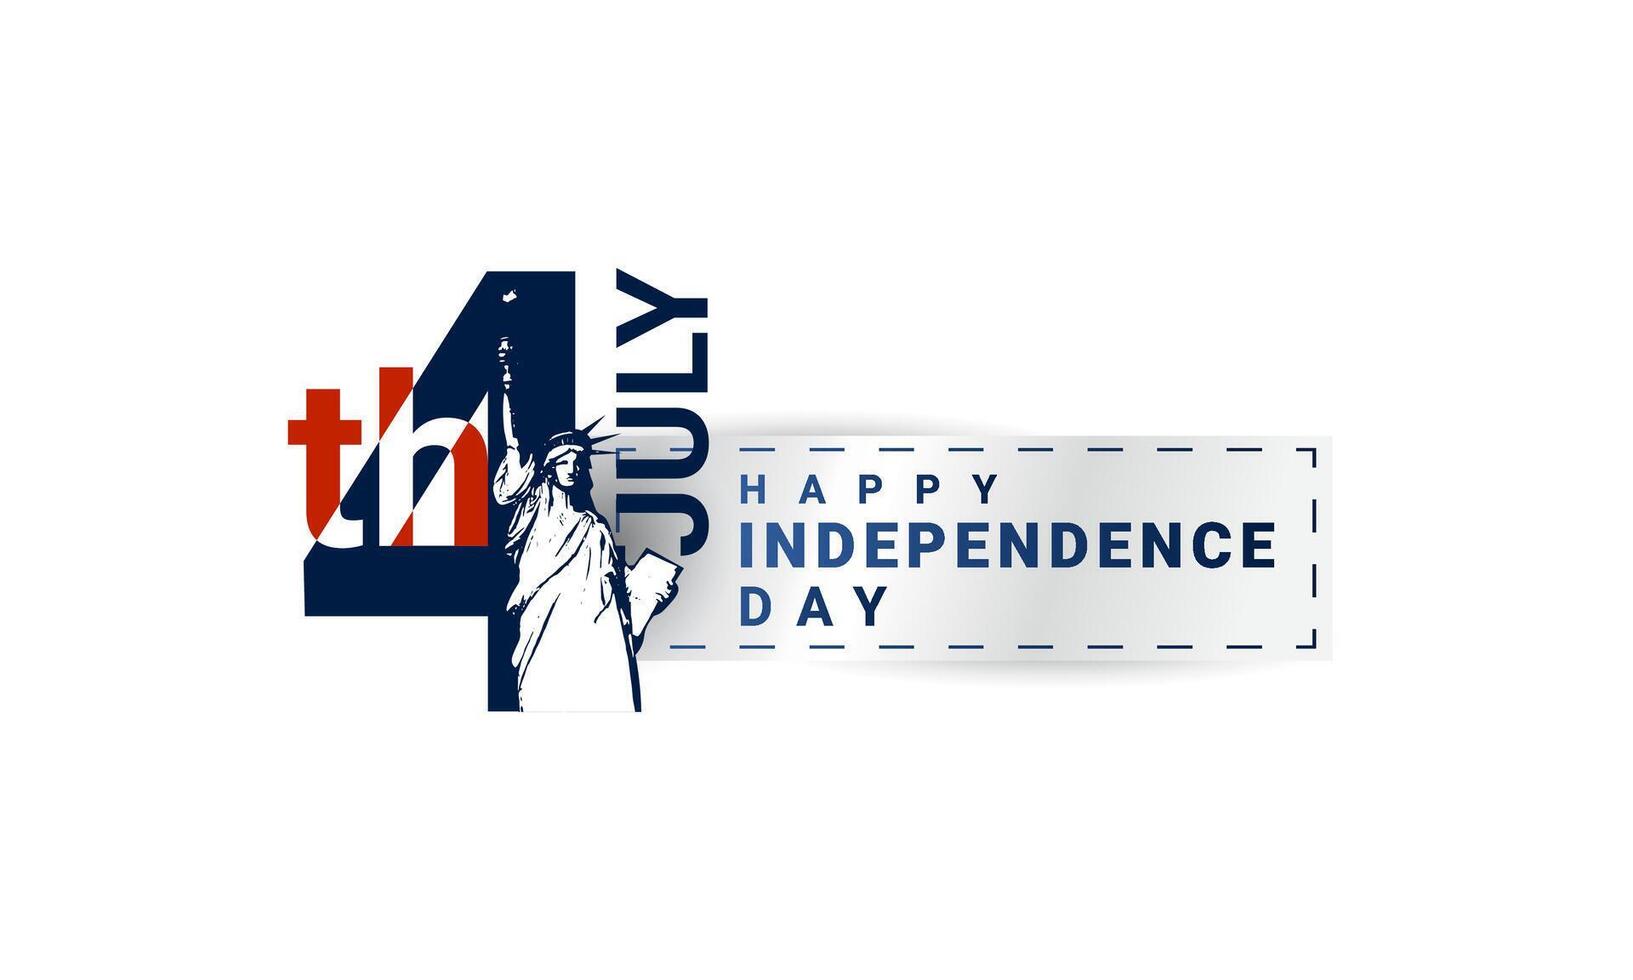 vereinigt Zustände Unabhängigkeit Tag, 4 .. von Juli amerikanisch Freiheit, geeignet zum Hintergründe, T-Shirts, Kleidung, Poster, Banner und Andere vektor